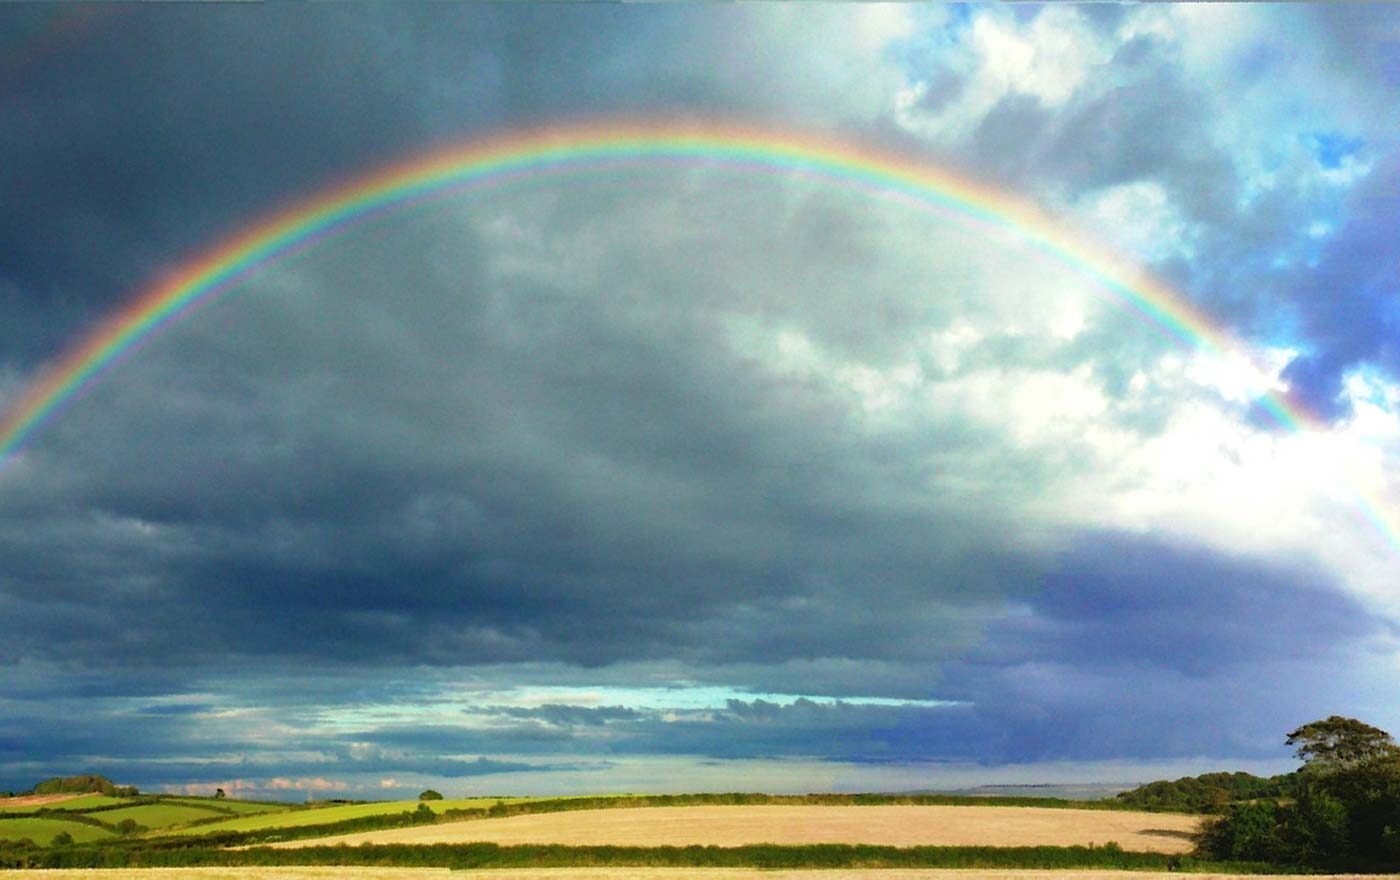 "Der Regenbogen, wann immer wir ihn sehen, ist ein doppeltes Zeichen. Er mahnt uns, auf die Erde zu achten, und er gibt Hoffnung, dass wir die Rettung der Welt vor der drohenden Klimakatastrophe noch schaffen können." Foto:: pixabay